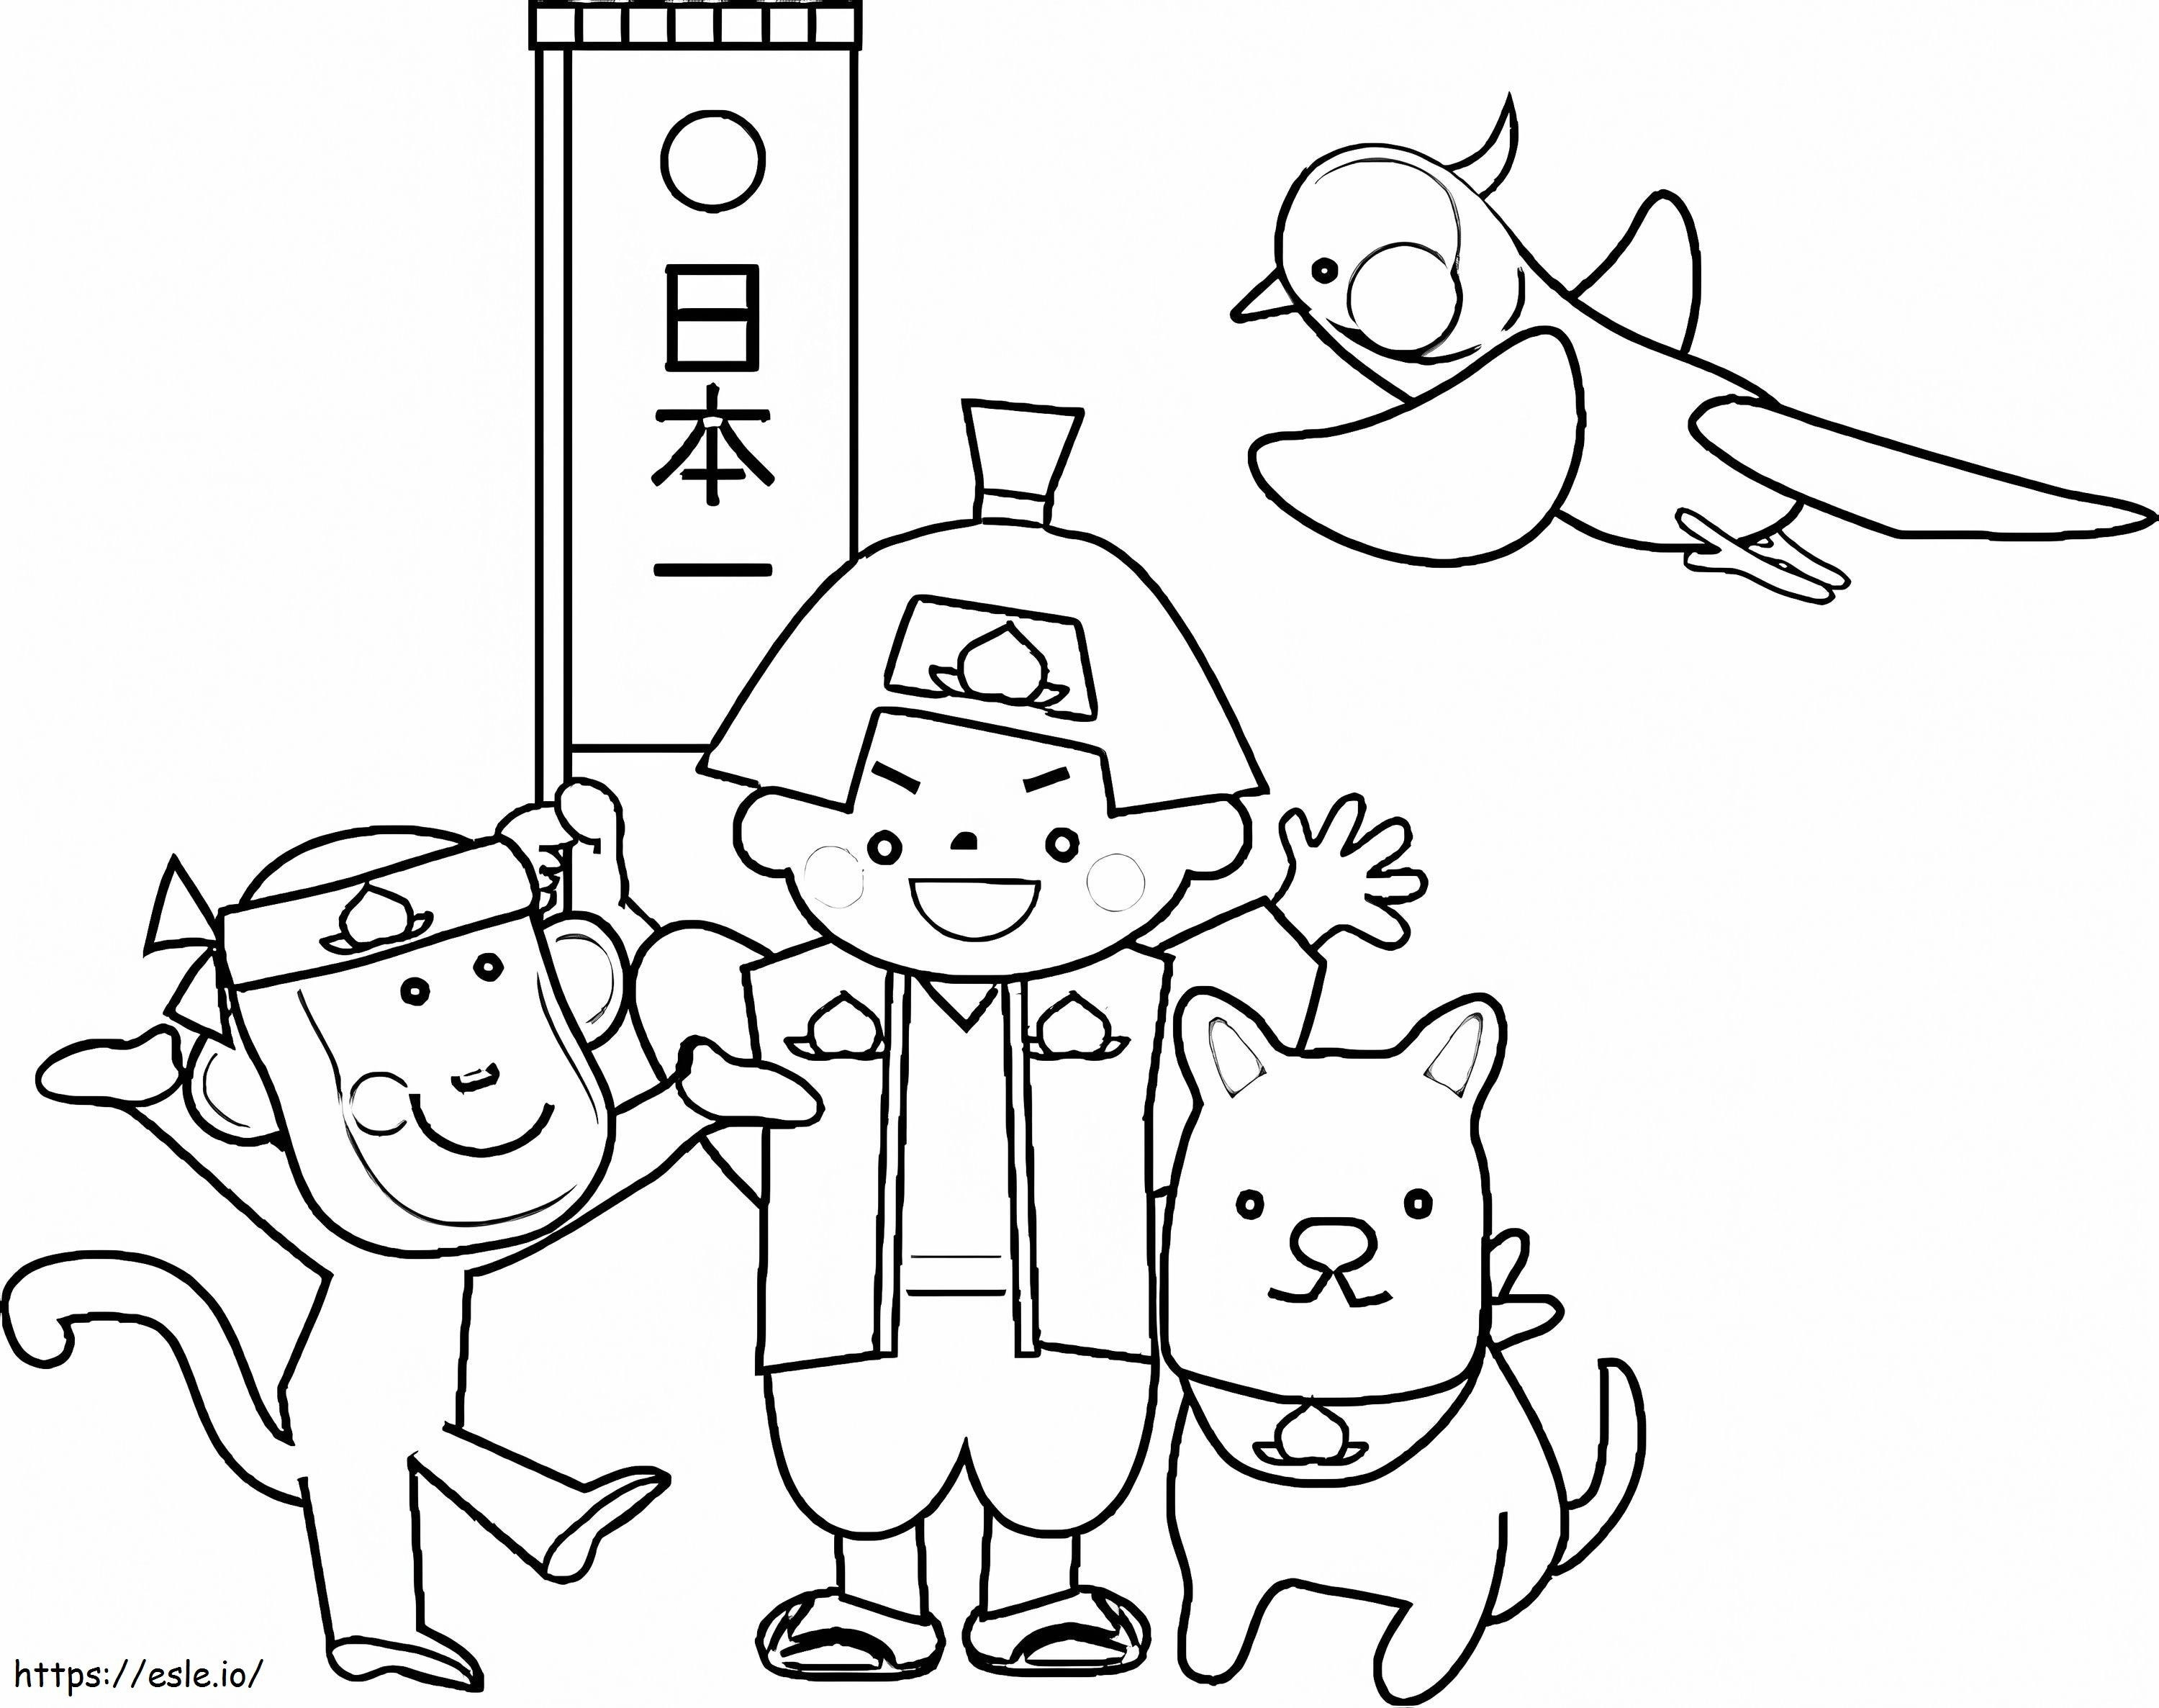 Happy Momotaro coloring page